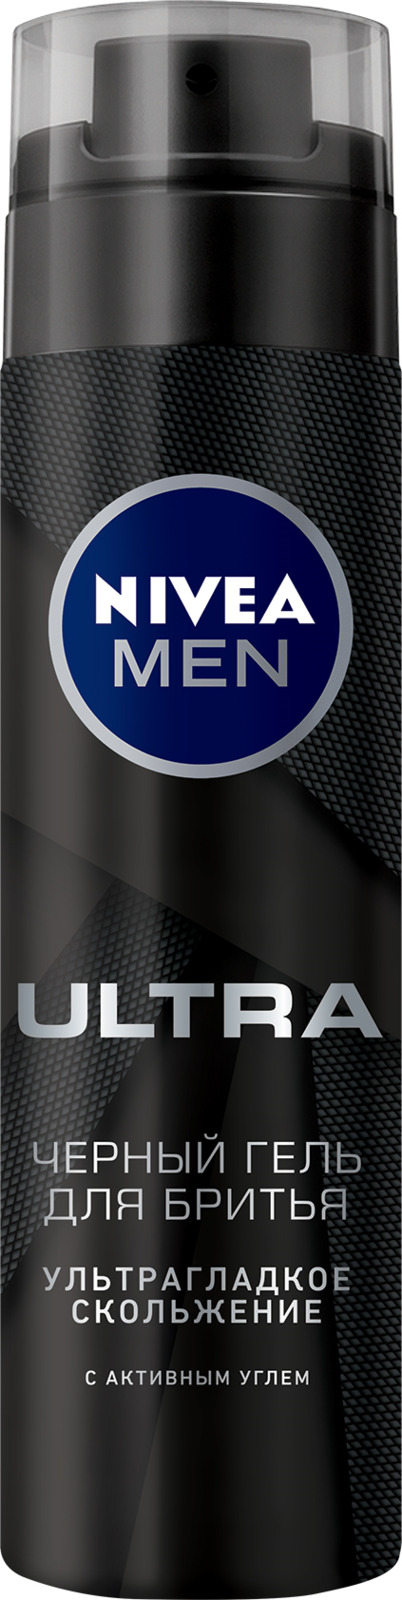 Черный гель для бритья Nivea ULTRA, 200 мл